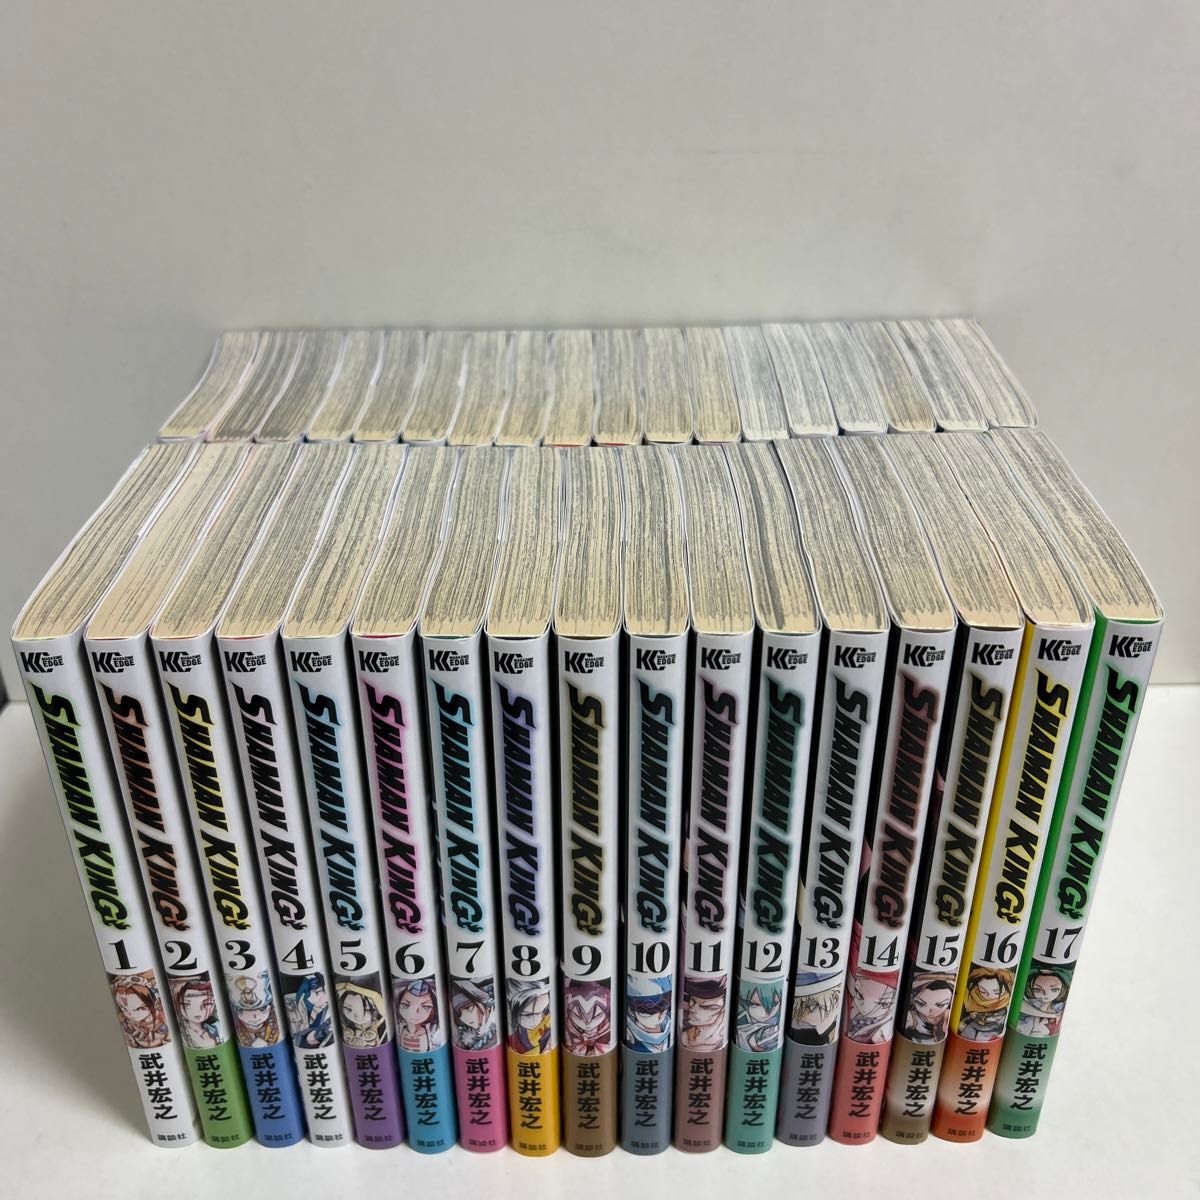 全巻初版　新装版　SHAMAN KING シャーマンキング　1〜35巻　全巻　シャーマンキング全巻